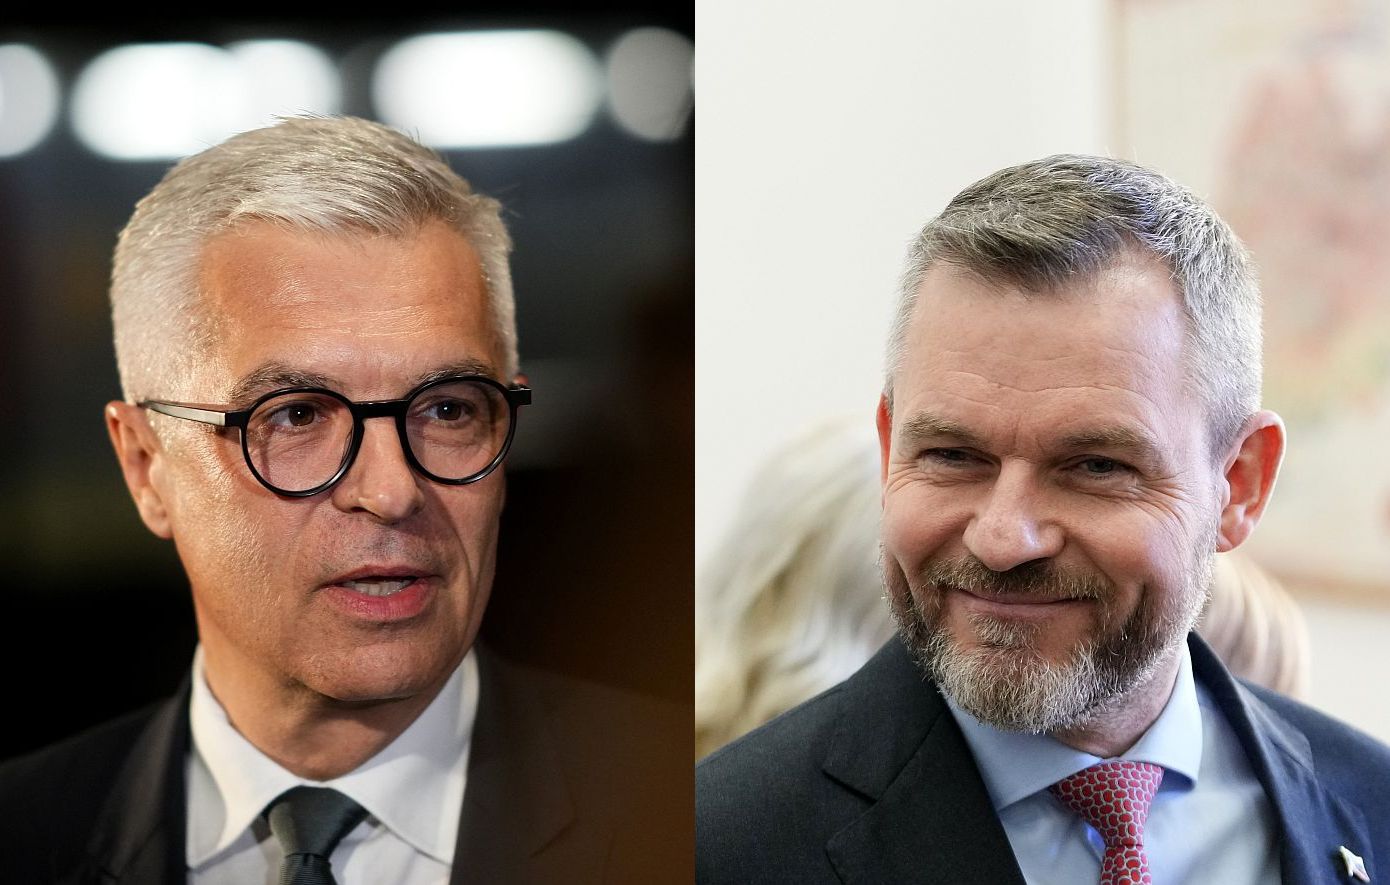 Κόρτσοκ και Πελεγκρίνι θα αναμετρηθούν στον δεύτερο γύρο των προεδρικών εκλογών στη Σλοβακία